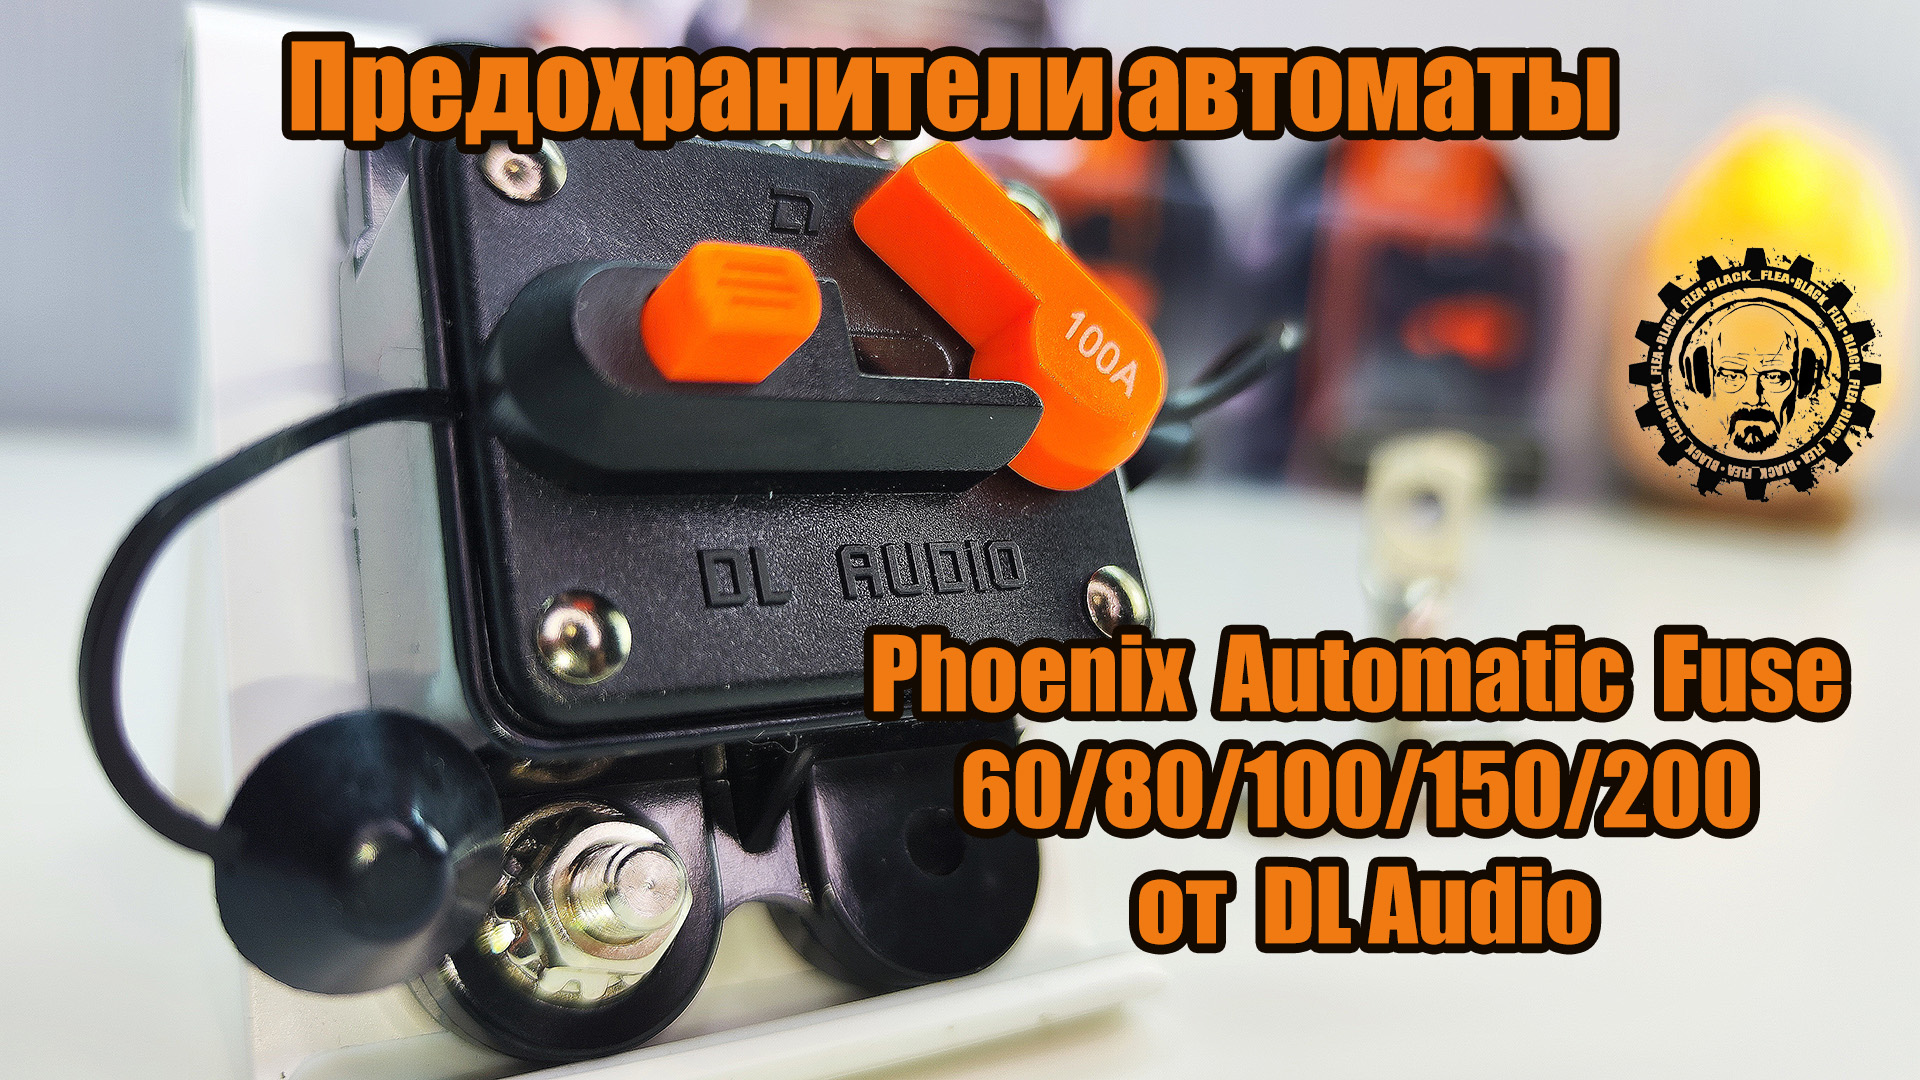 Предохранители автоматы Phoenix Automatic Fuse 60/80/100/150/200 от DL Audio